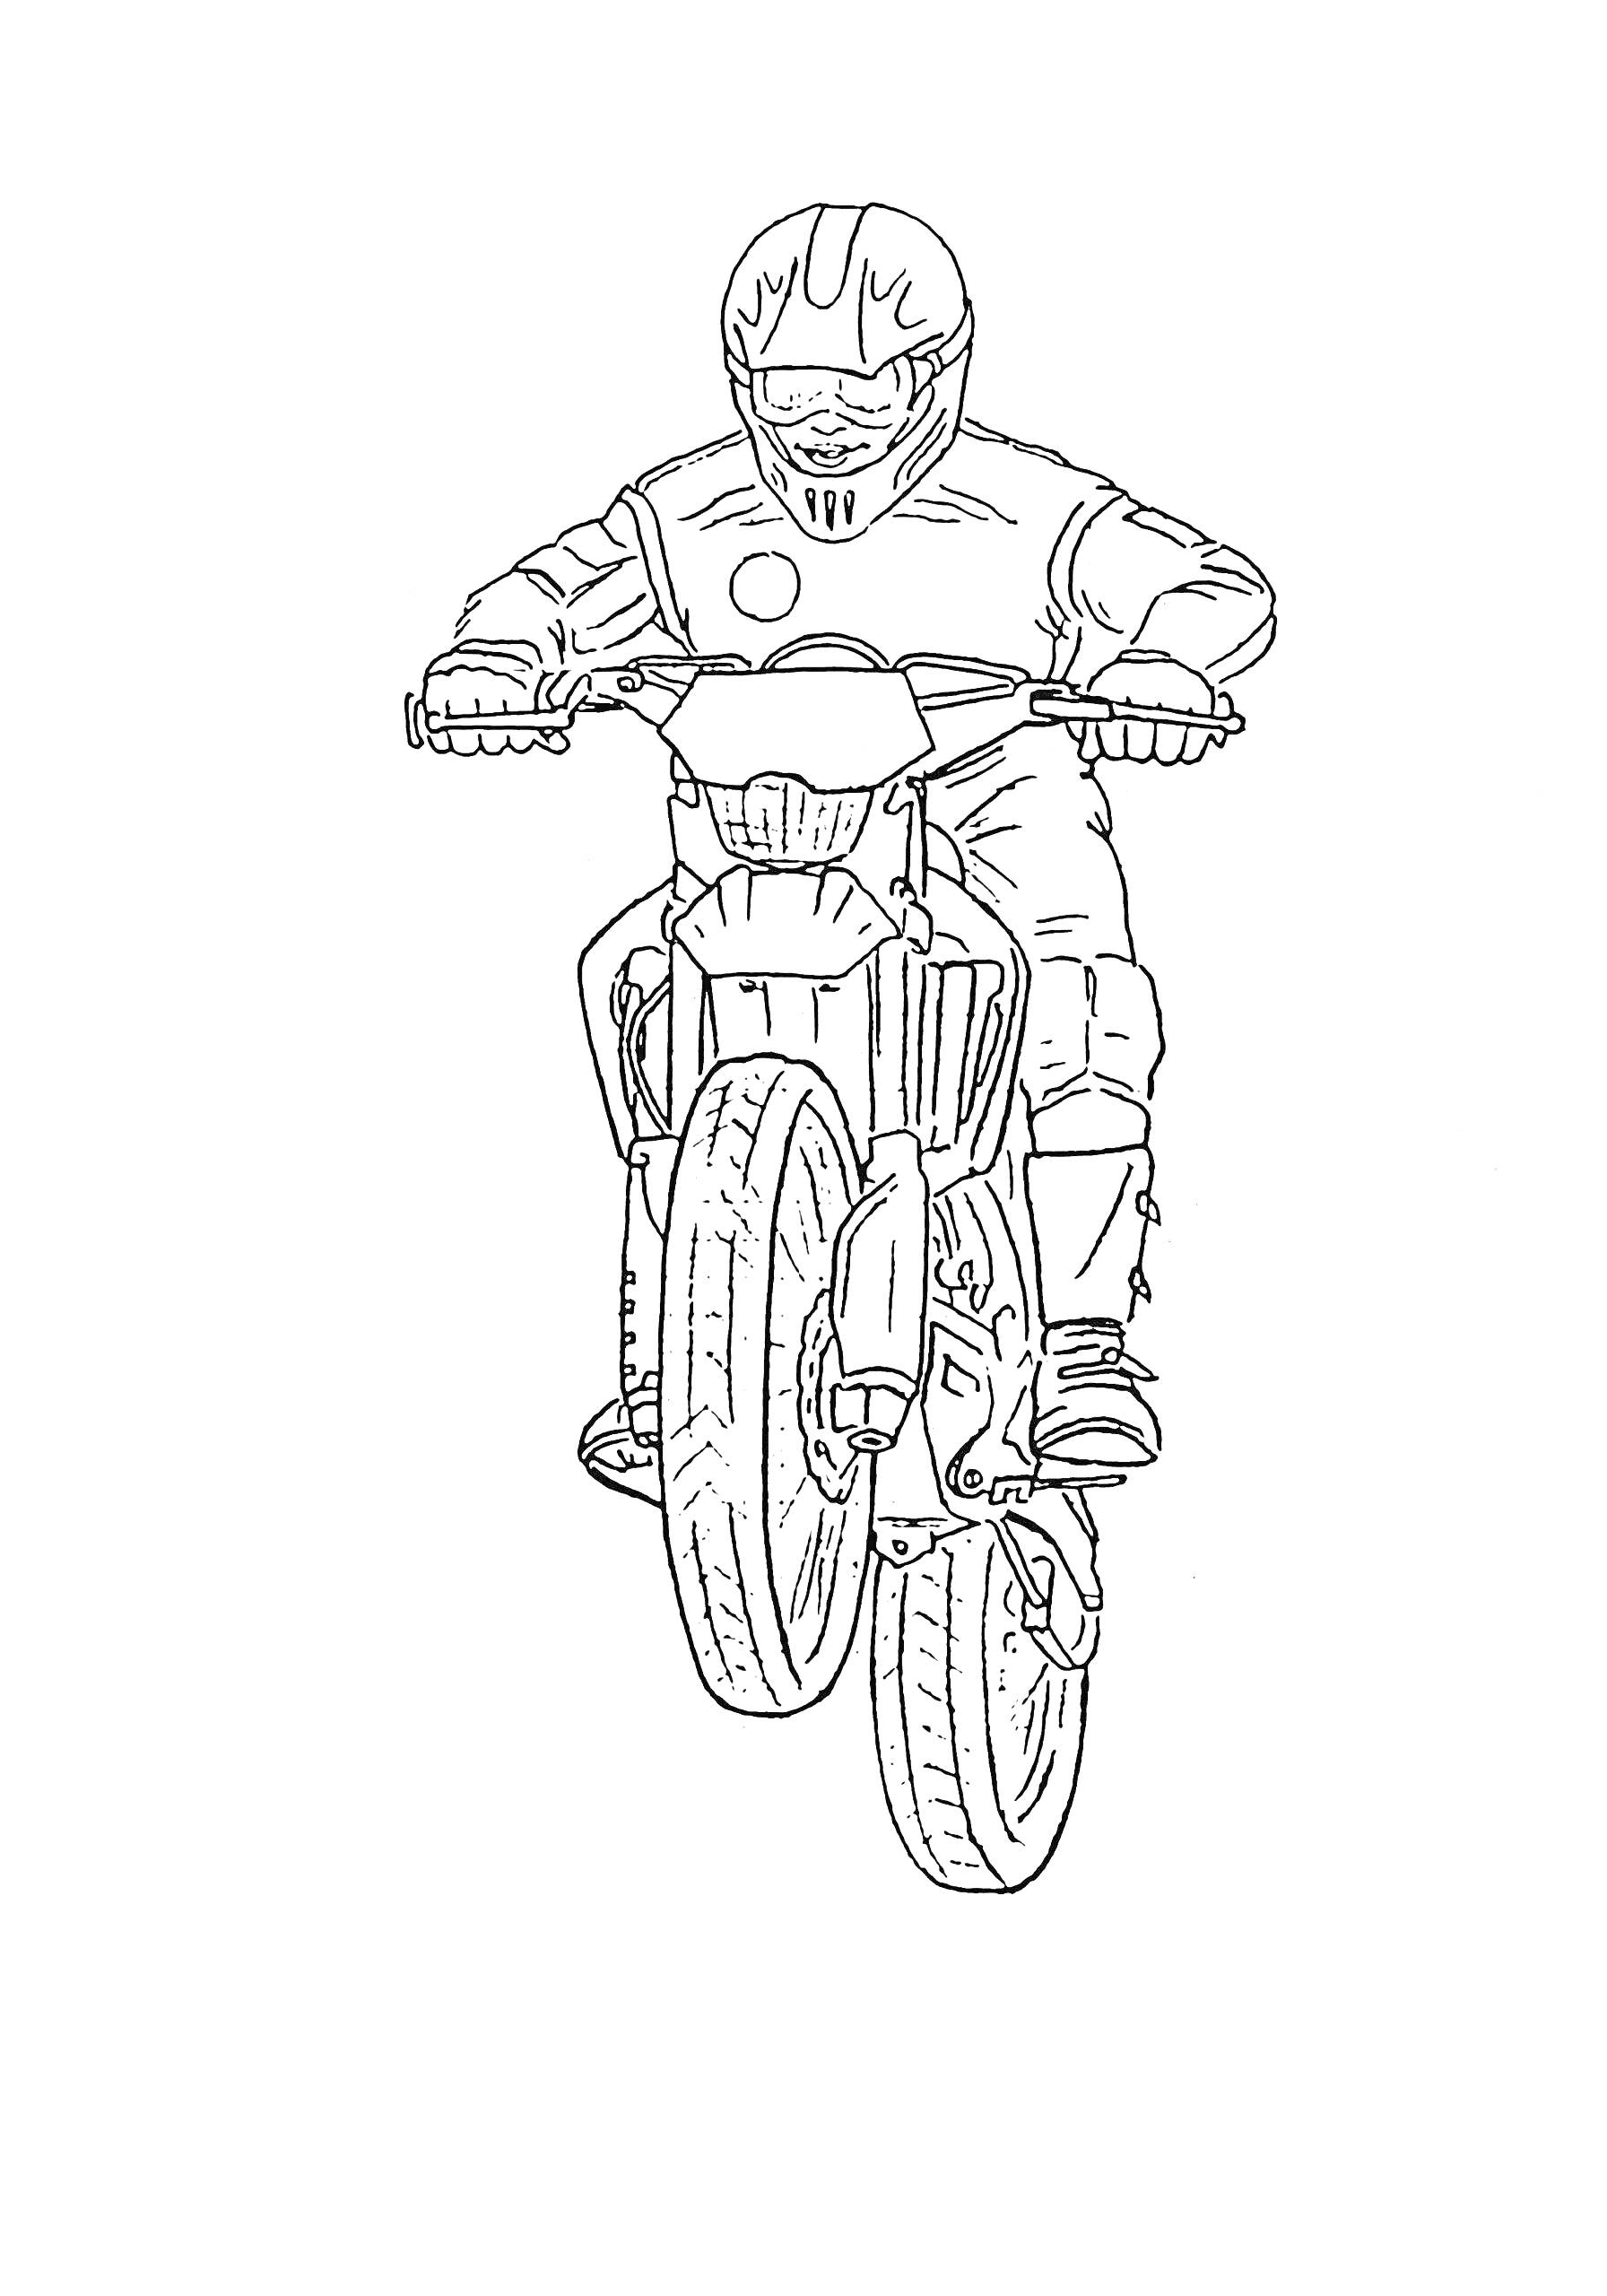 Человек на мотоцикле в спортивной экипировке, скачущий на переднем колесе